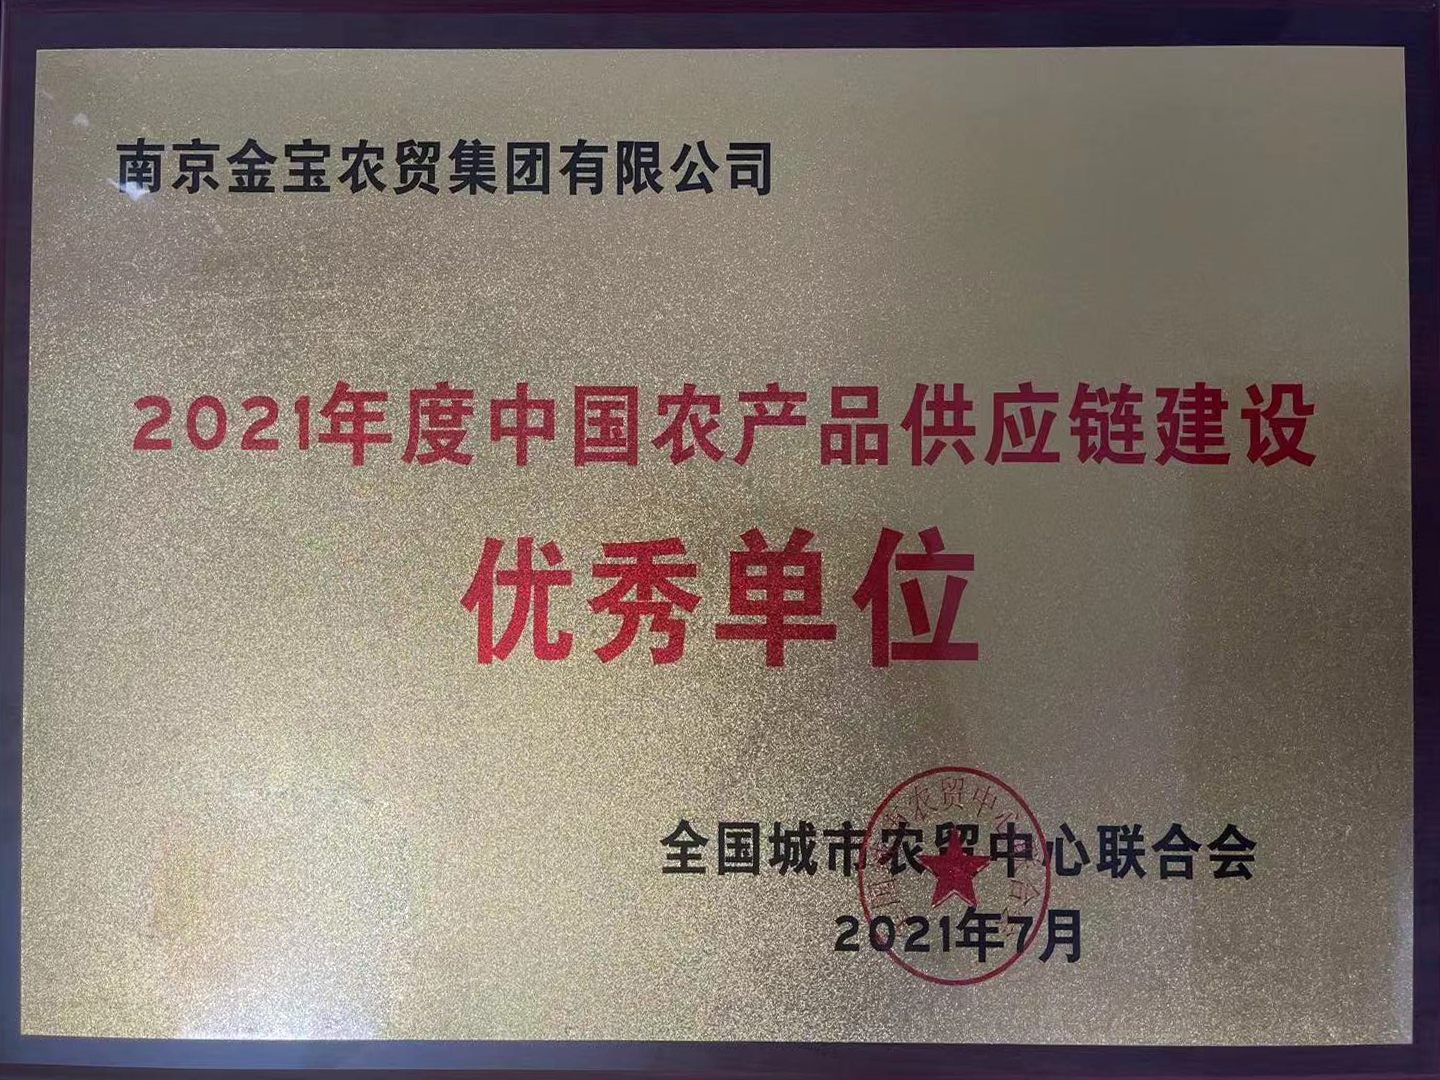 2021年10月金宝农贸集团荣获“2021年度中国农产品供应链建设优秀单位”称号.jpg